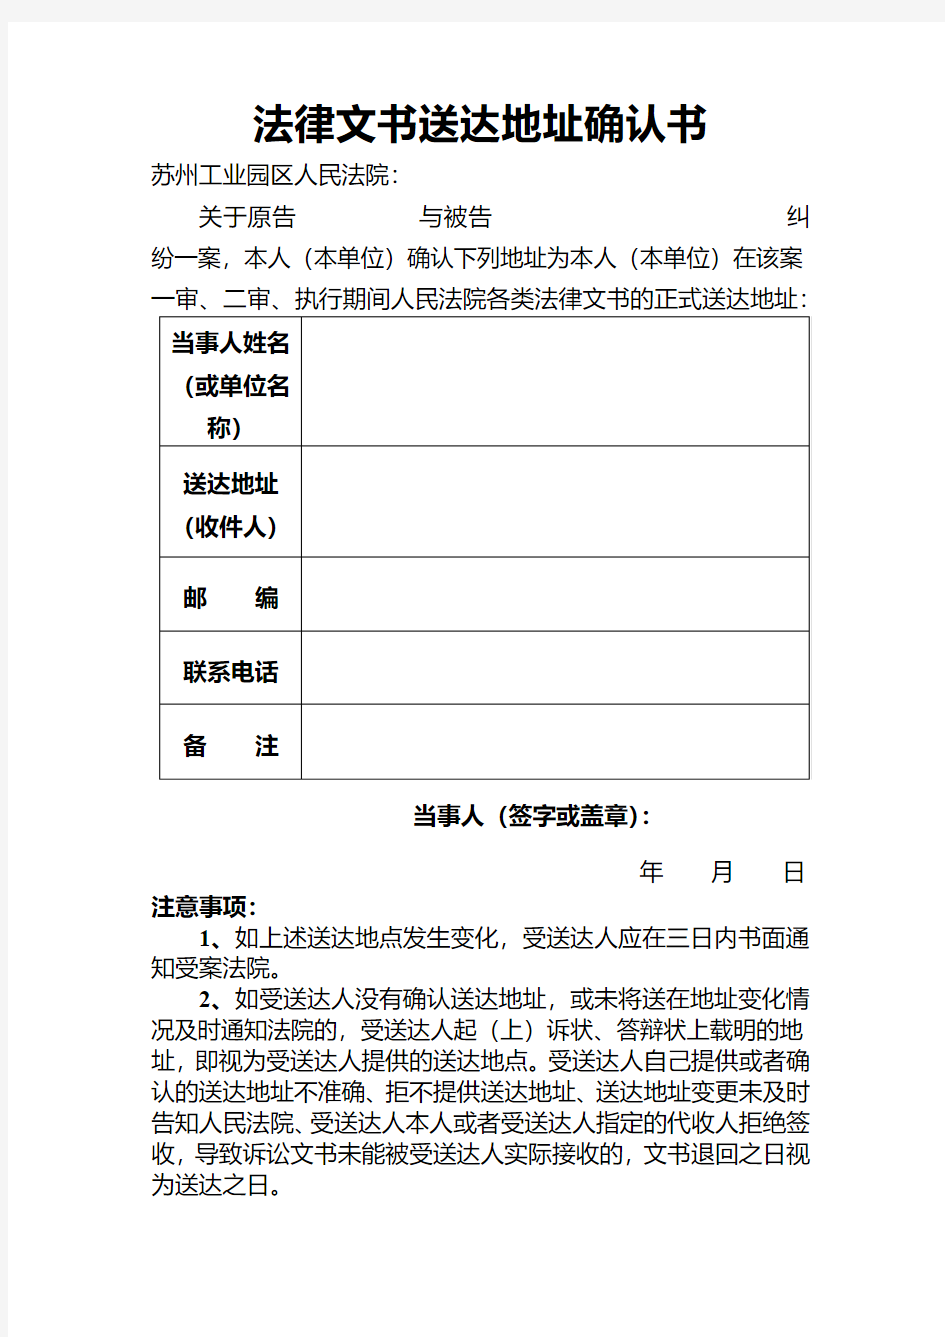 法律文书送达地址确认书-苏州工业园区人民法院